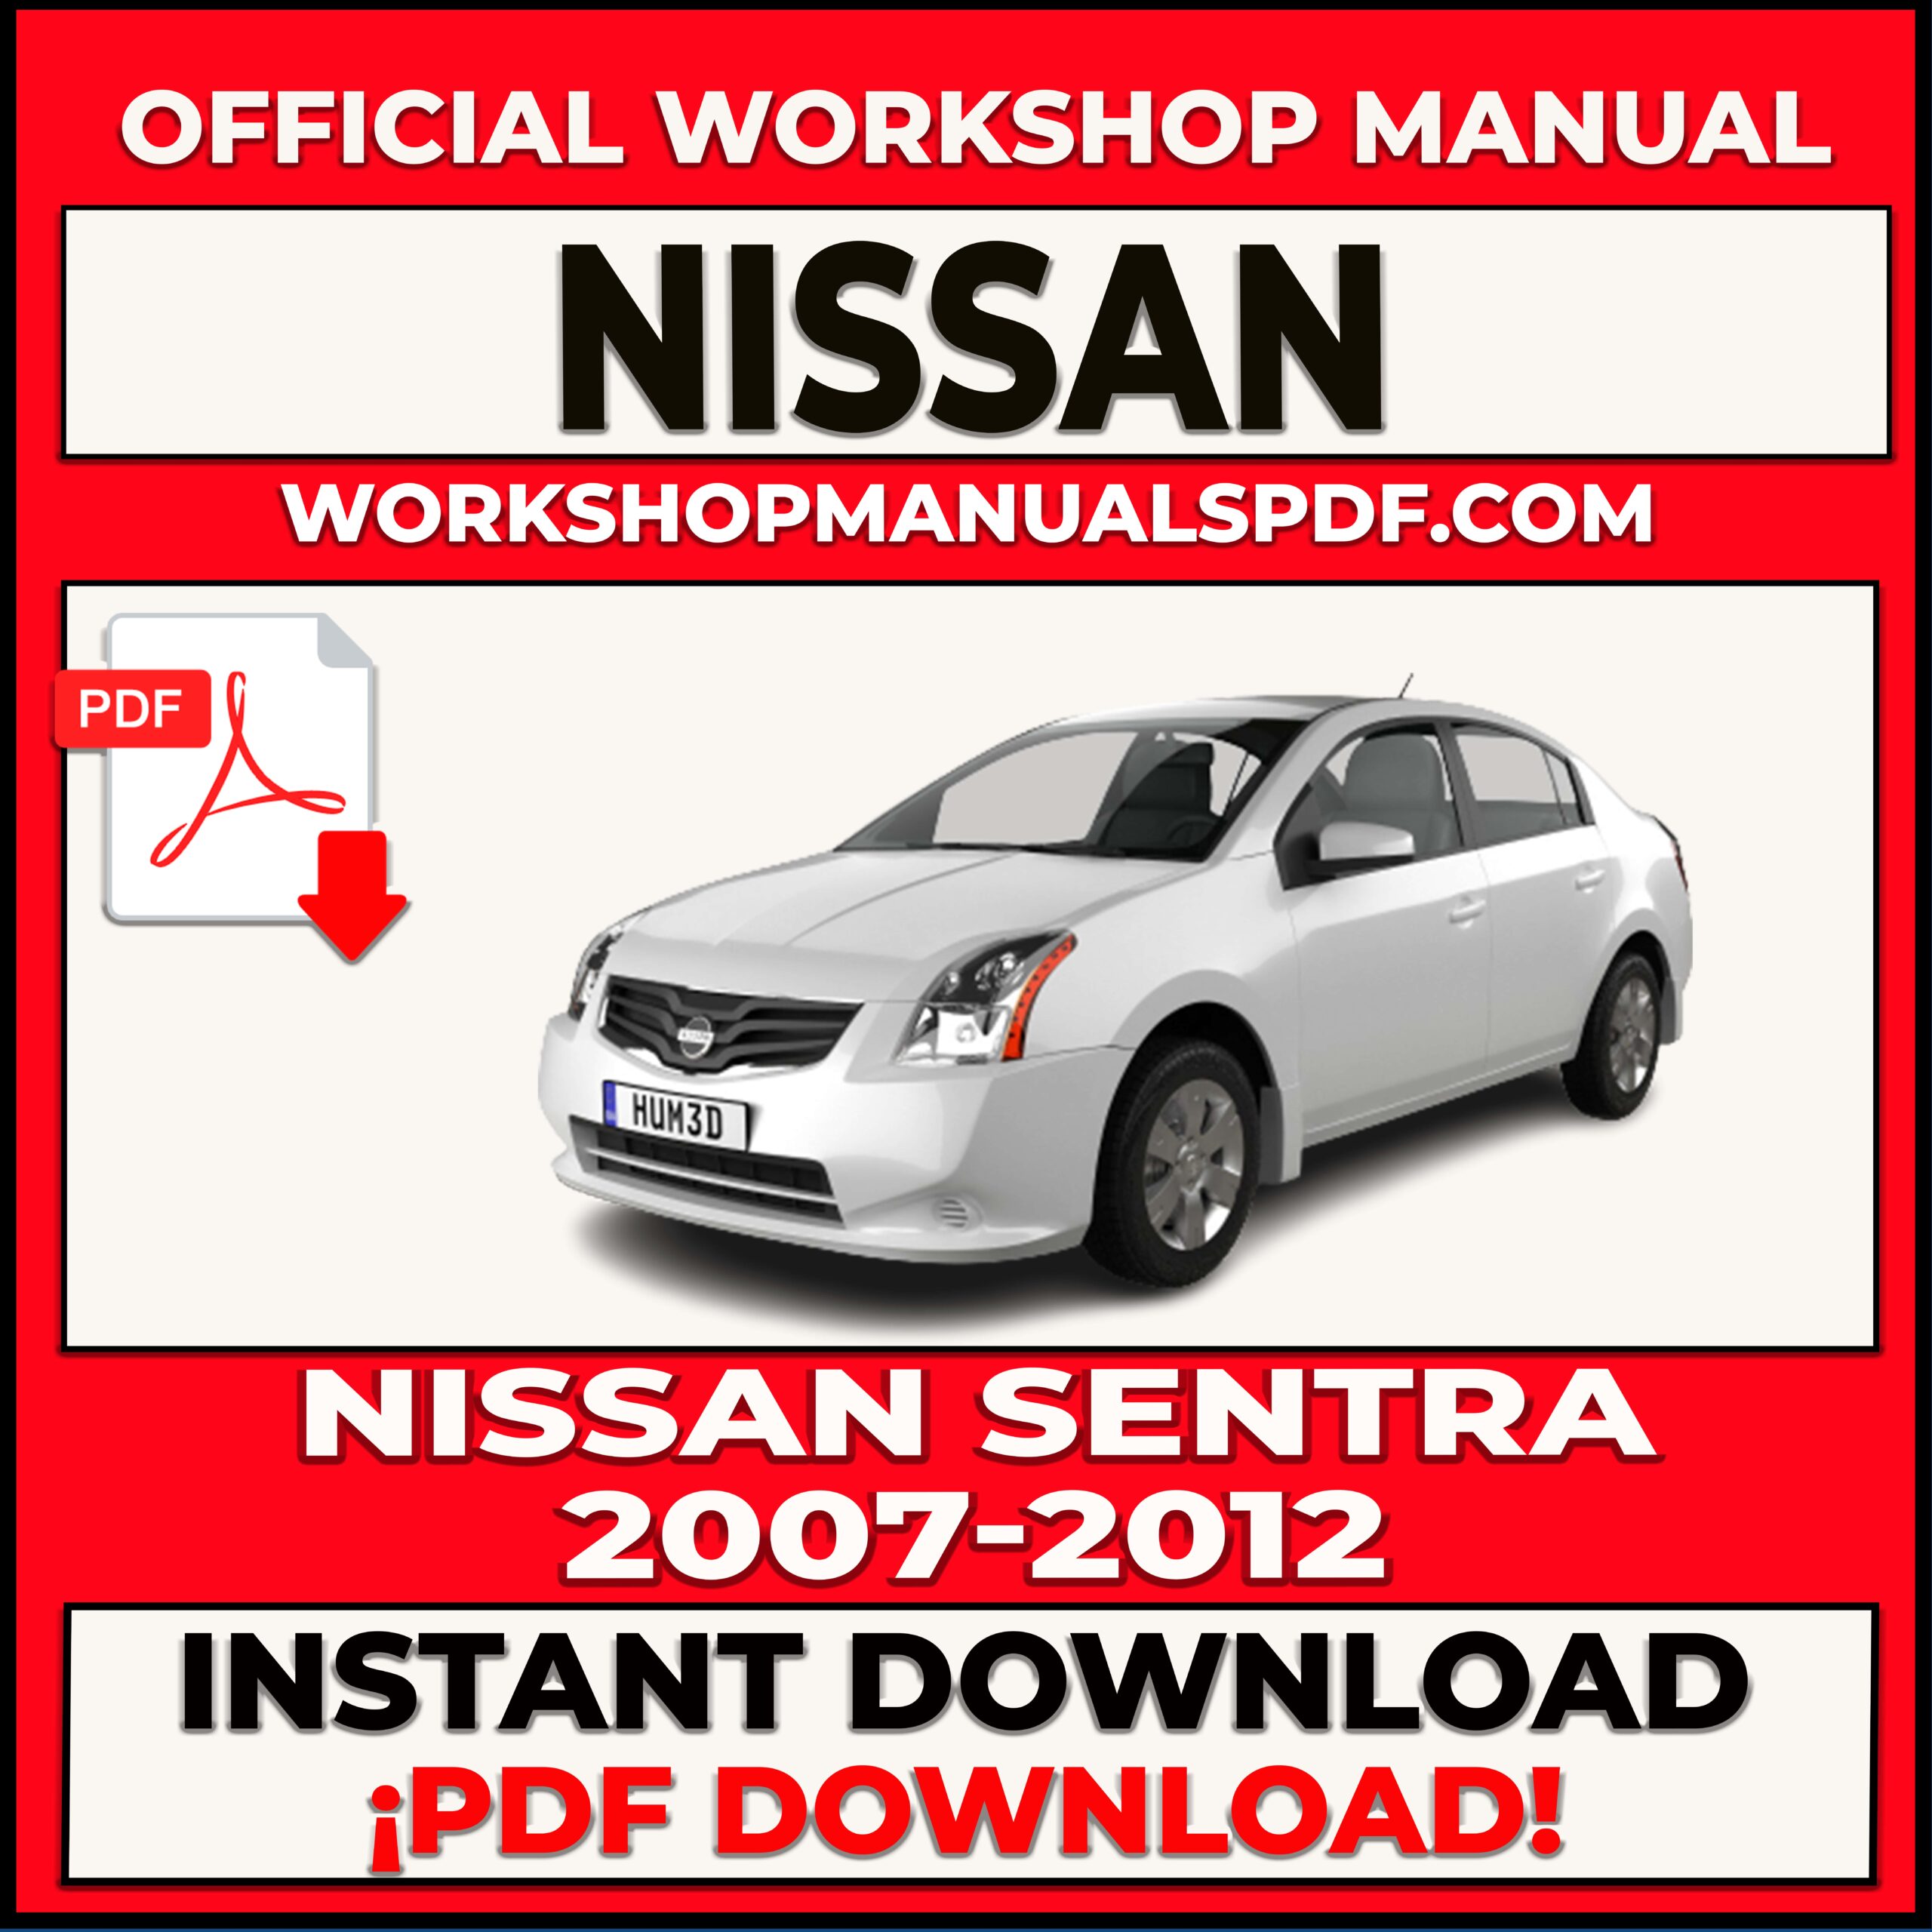 Nissan Sentra 2007-2012 Workshop Repair Manual